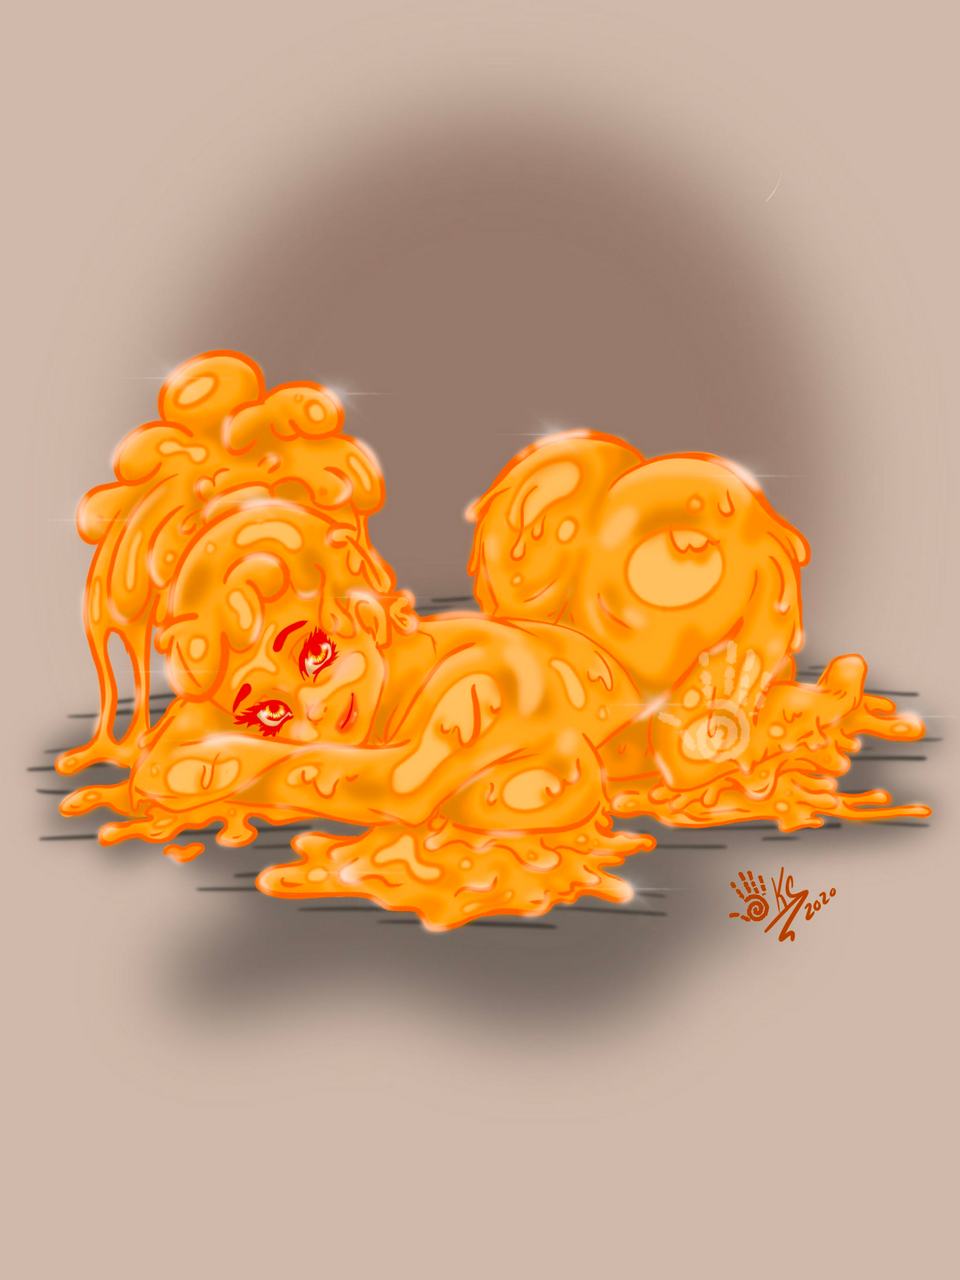 Orange Slimegirl Artist Ooh A Piece Of Cand